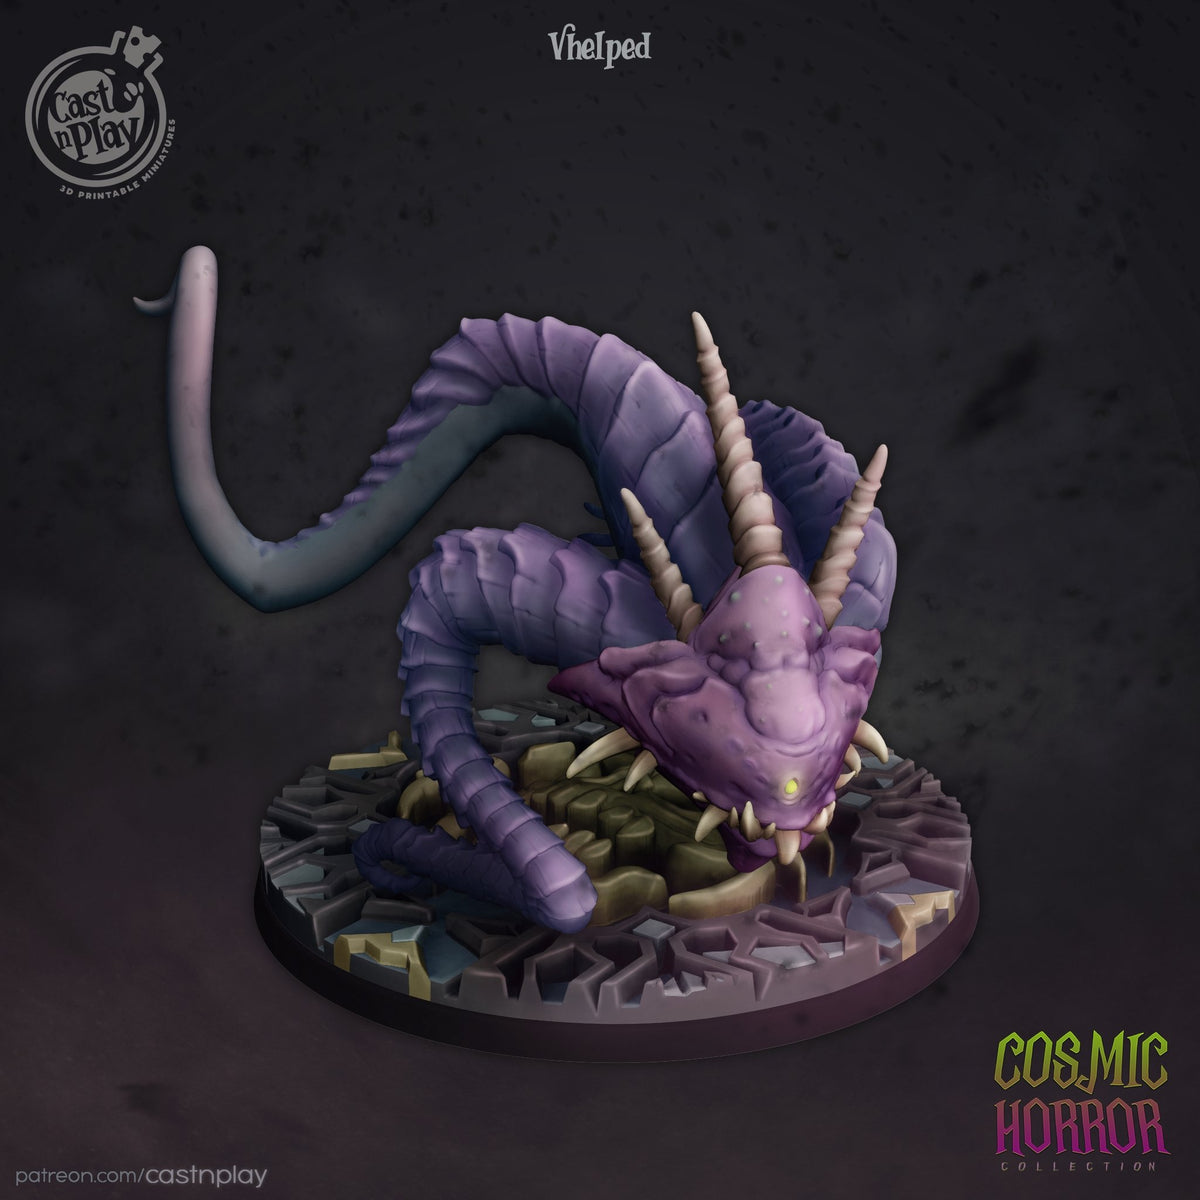 Vhelped - The Printable Dragon